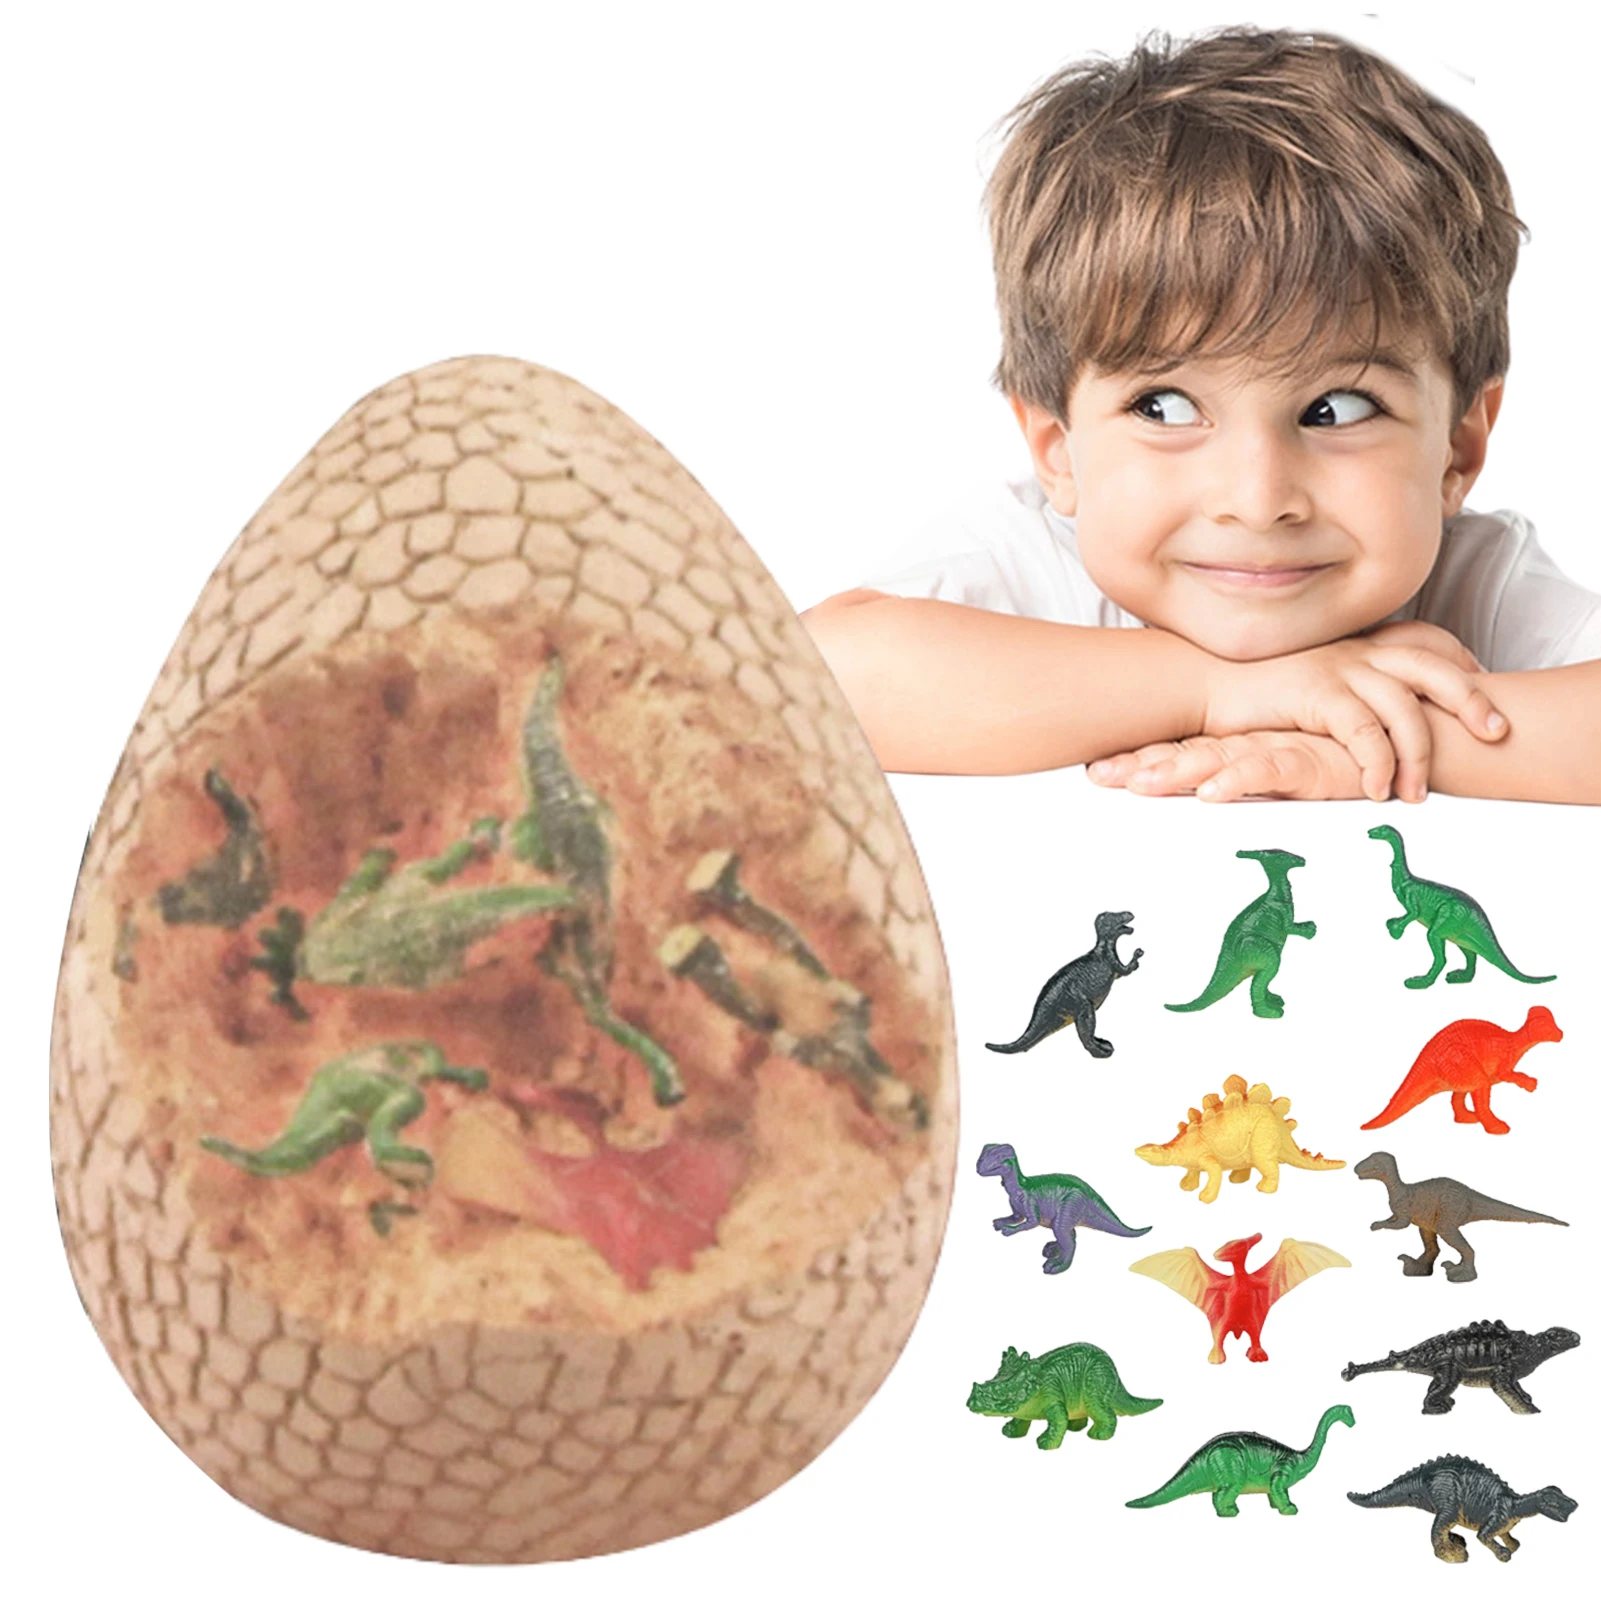 

Динозавр яйцо копать набор Jumbo Динозавр яйцо копать набор Детская обучающая игрушка Динозавр яйцо игрушечный экскаватор Science STEM подарки